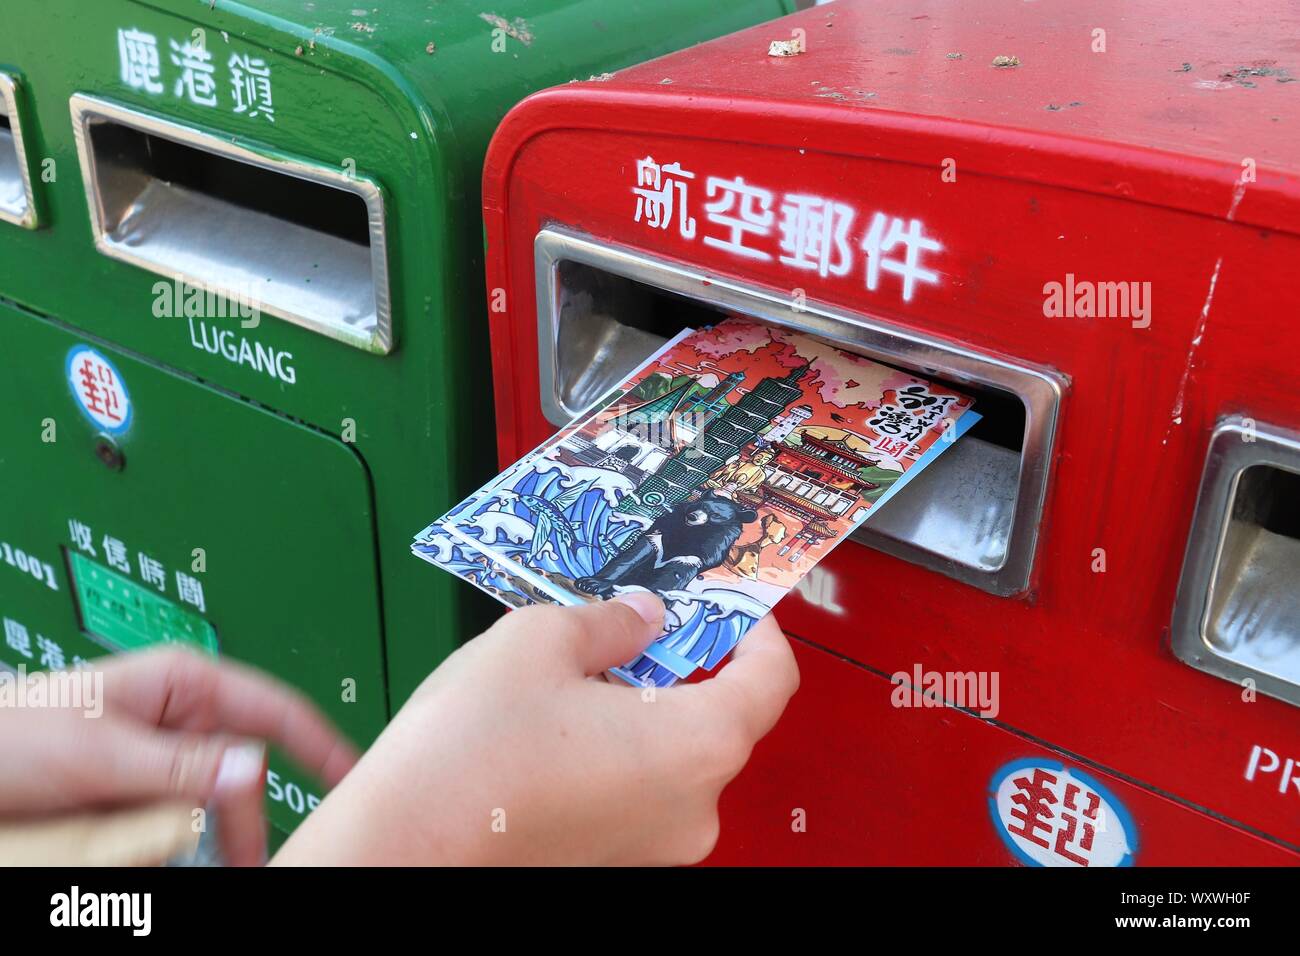 LUKANG, Taiwán - 2 de diciembre de 2018: Envío de postales en el buzón público en Lukang, Taiwán. Chunghwa Post es el diario nacional postal taiwanés serv Foto de stock